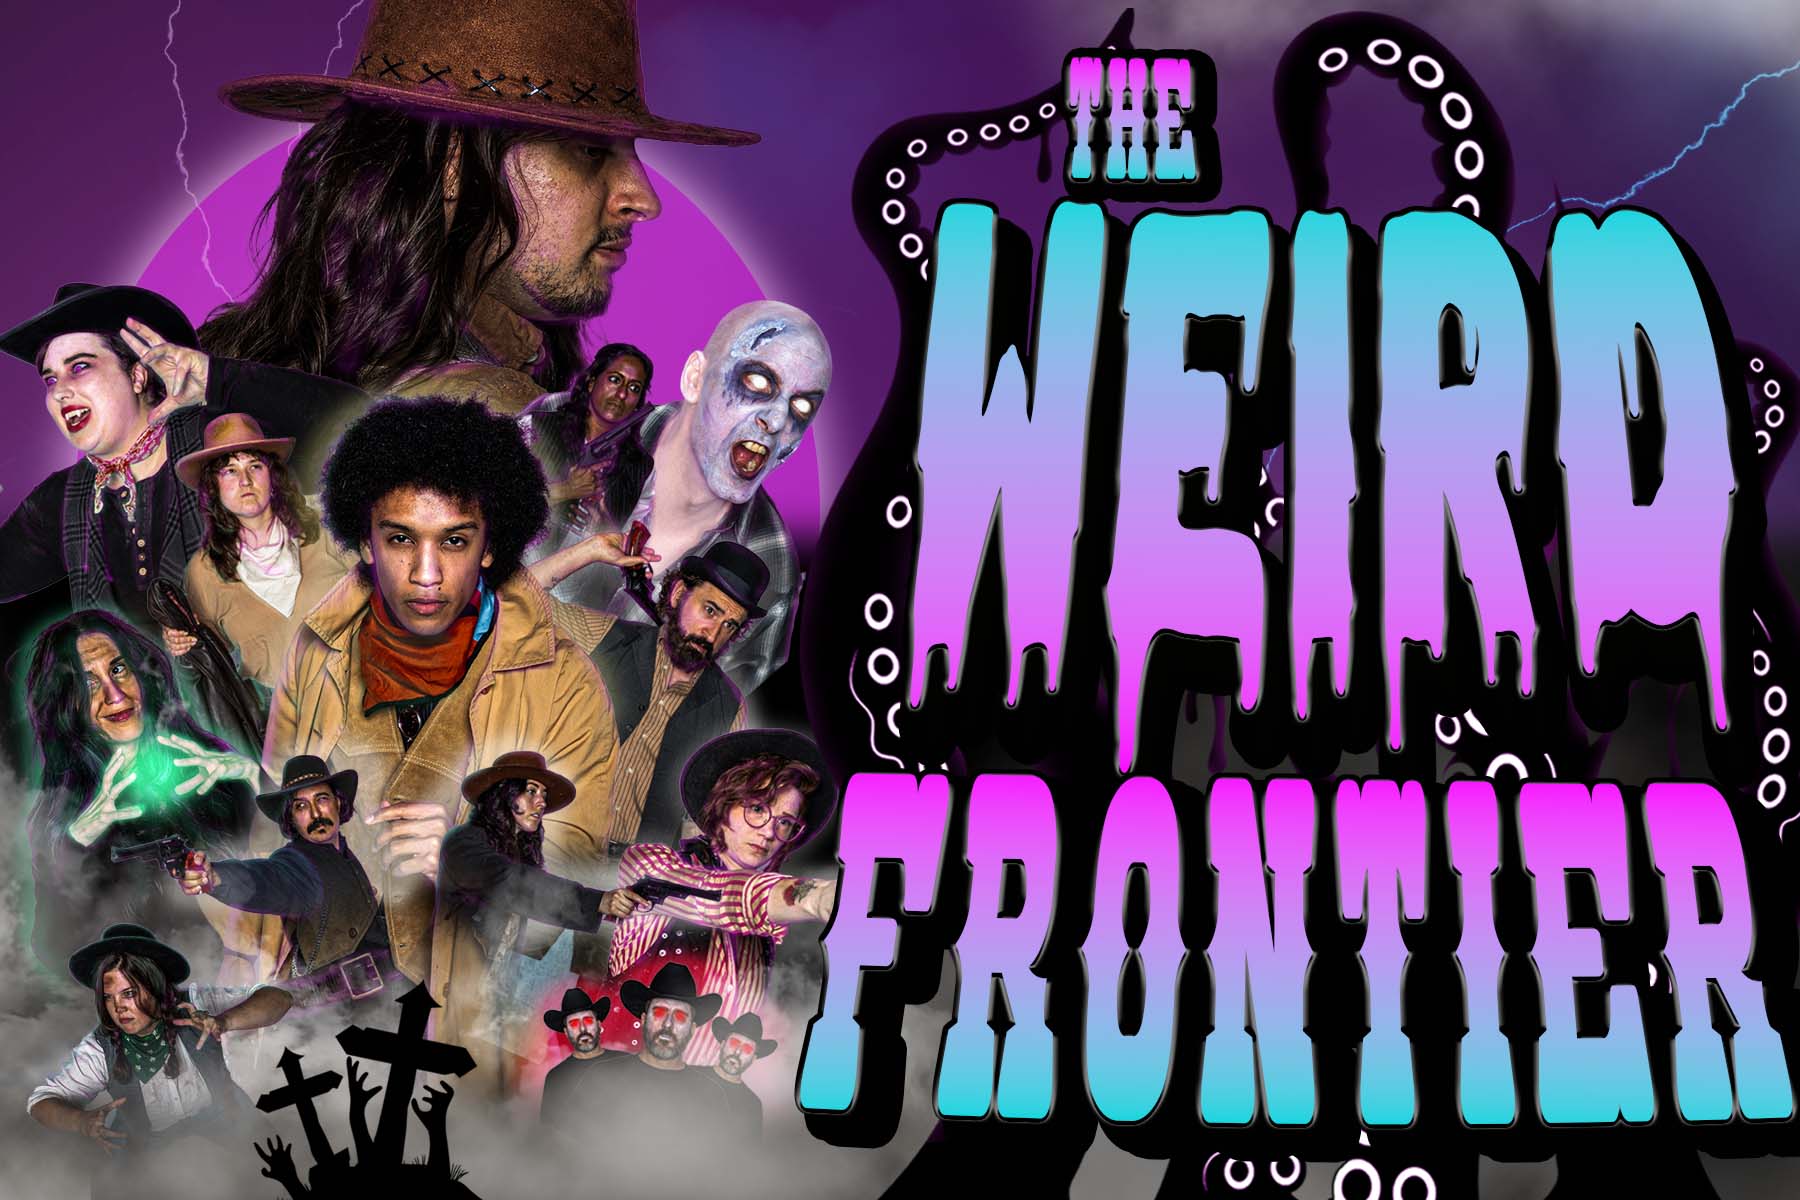 The Weird Frontier